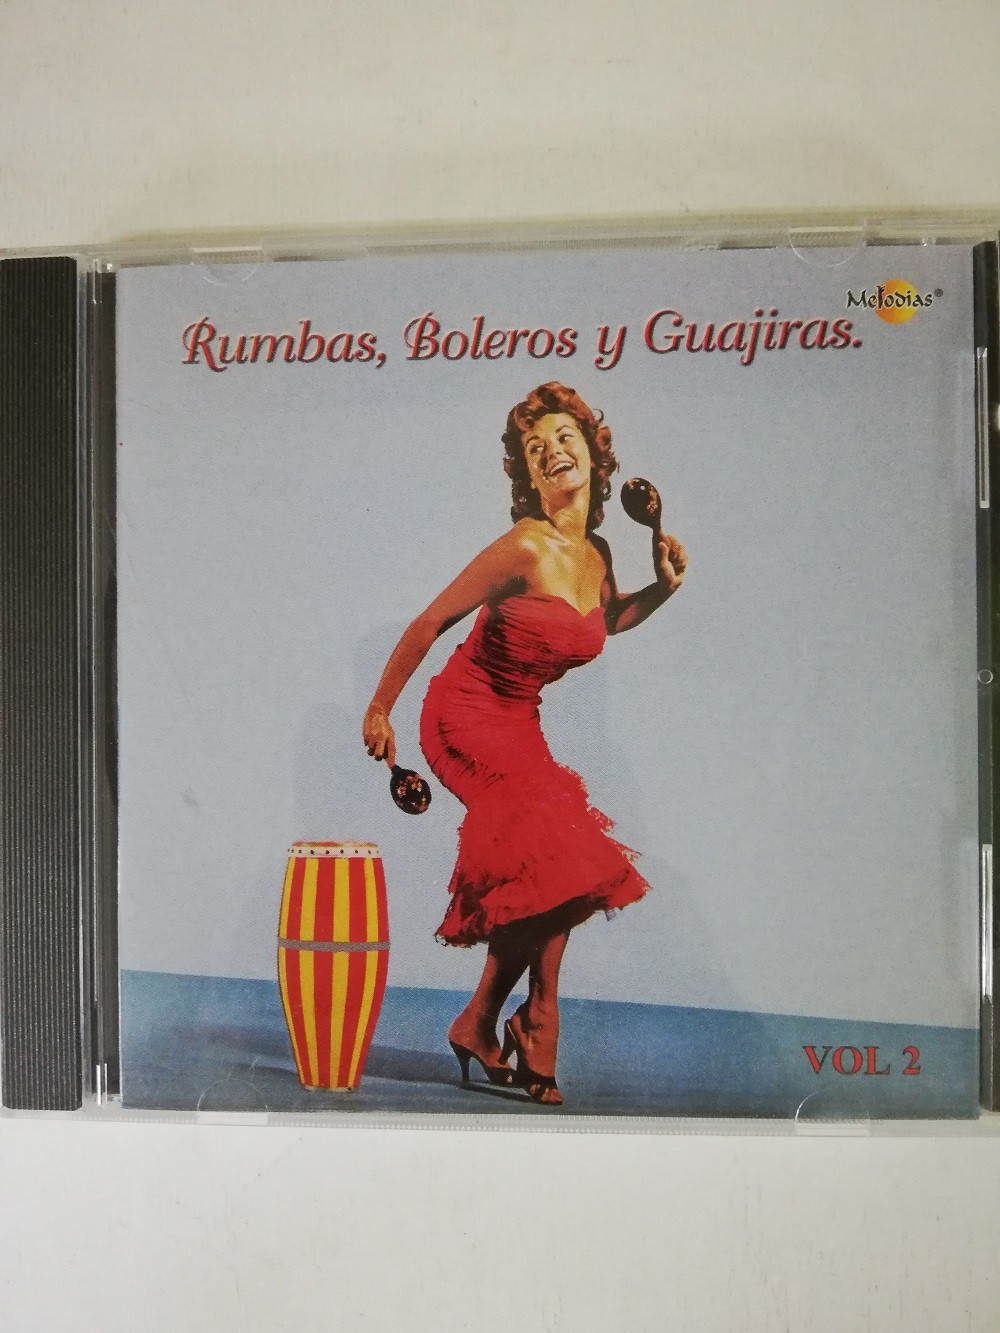 Imagen CD RUMBAS, BOLEROS Y GUAJIRAS - RUMBAS, BOLEROS Y GUAJIRAS VOL. 2